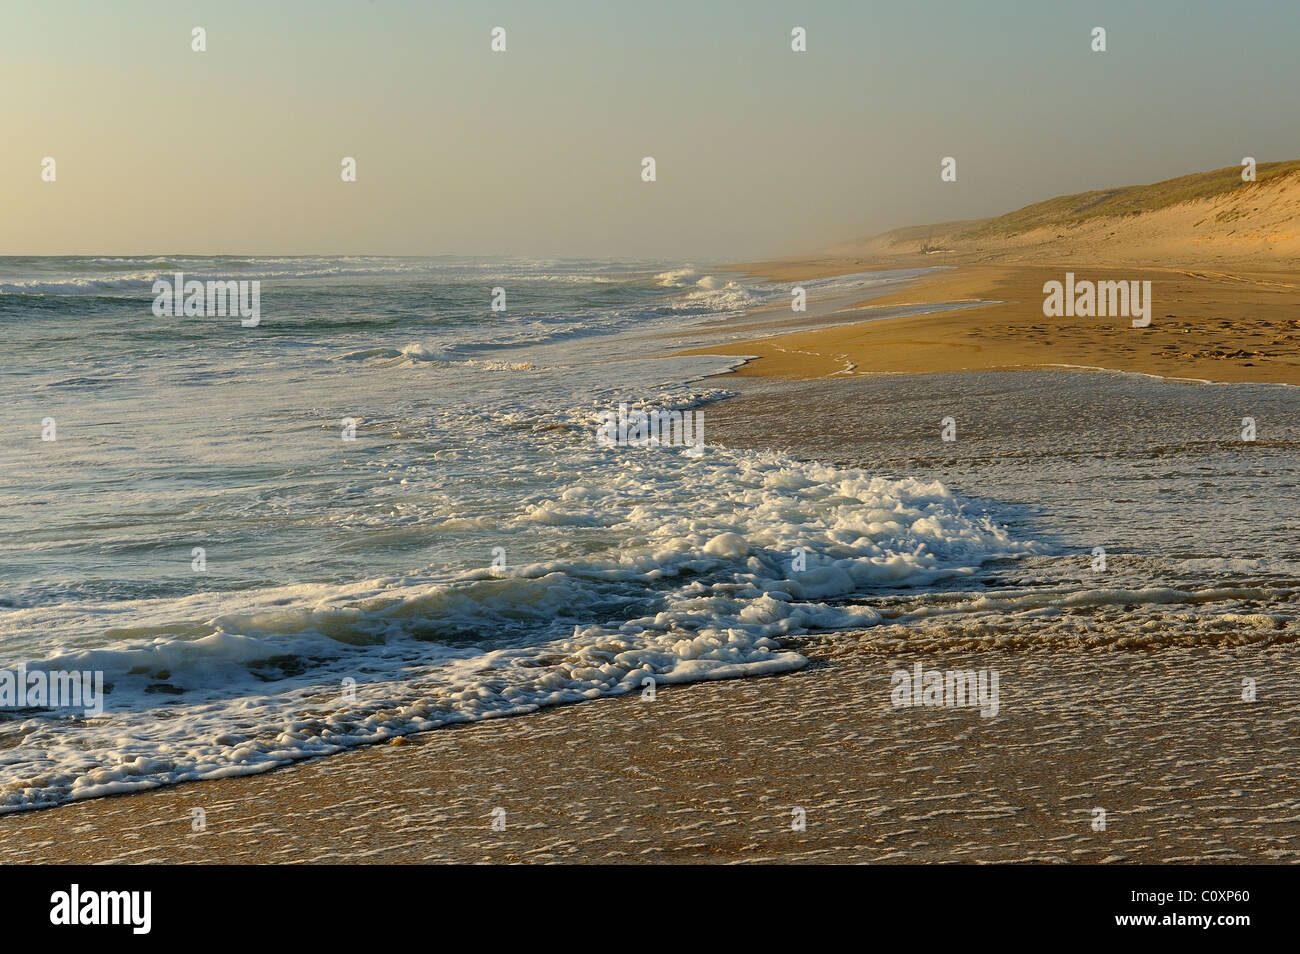 Wellen brechen auf einen sandigen Strand von Atlantik, le Cap Ferret, Gironde, Südwest-Frankreich Stockfoto